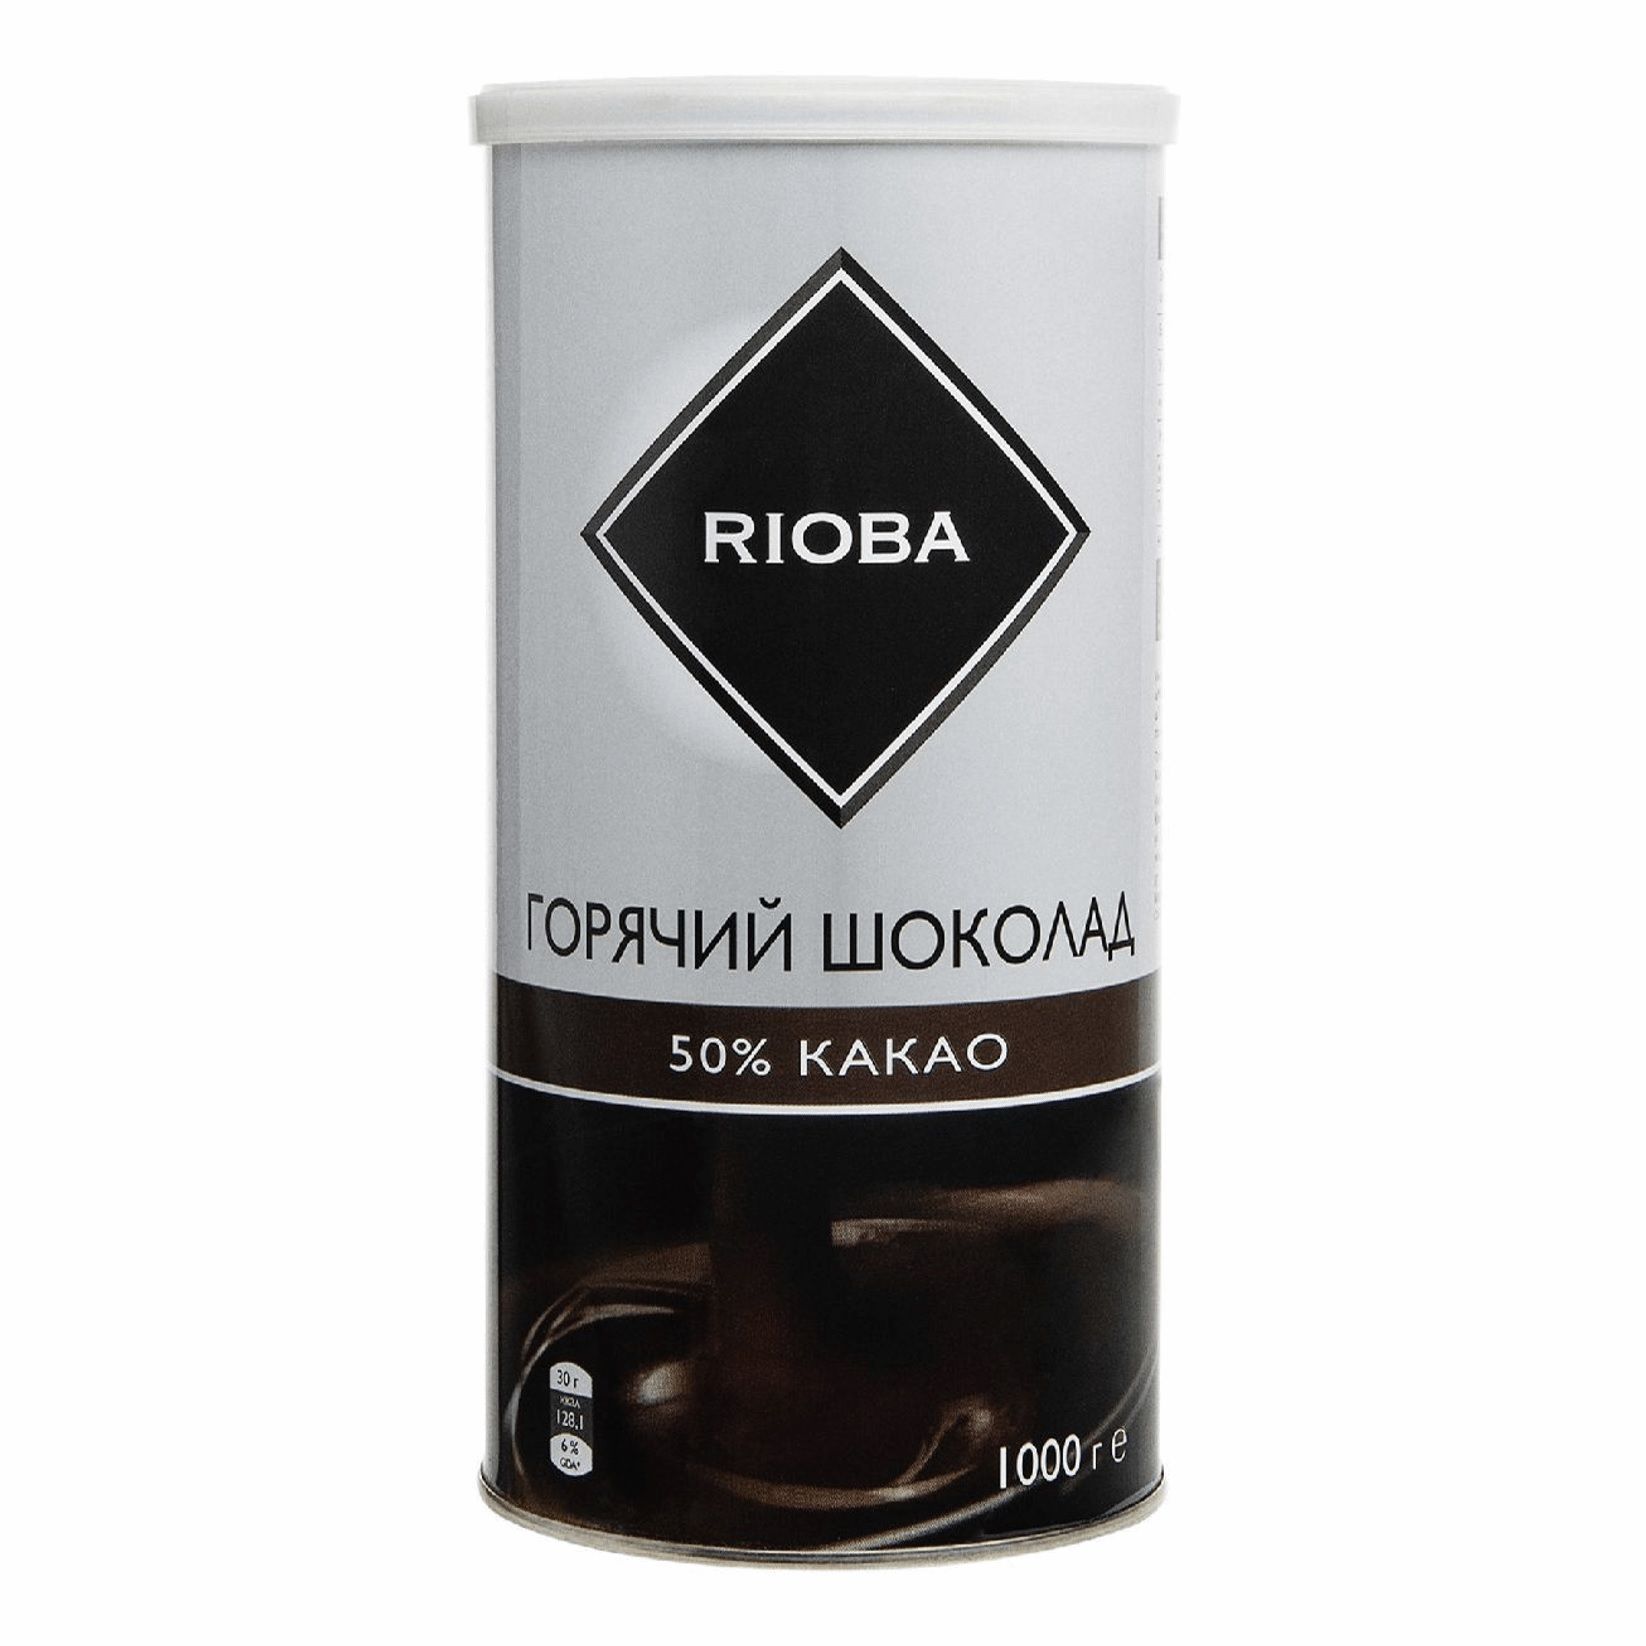 Rioba. Шоколад Риоба производитель. Чай Риоба с какао. Чай Риоба с шоколадом. Rioba шоколад купить.